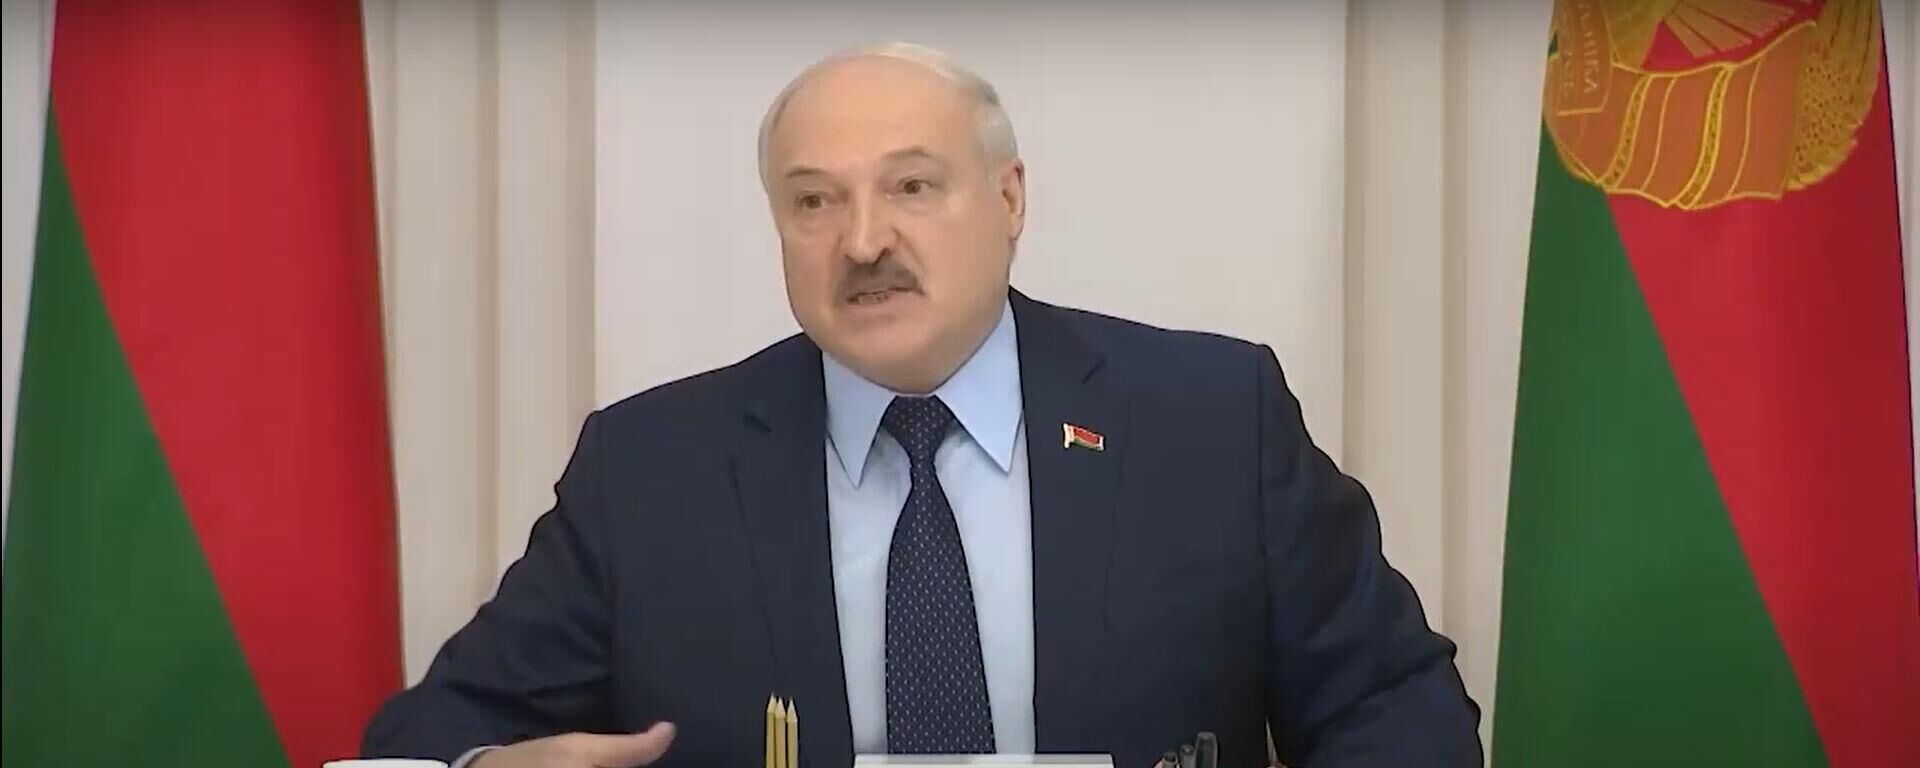 Минск предупреждал Украину: Лукашенко дал оценку спецоперации РФ - Sputnik Латвия, 1920, 24.02.2022